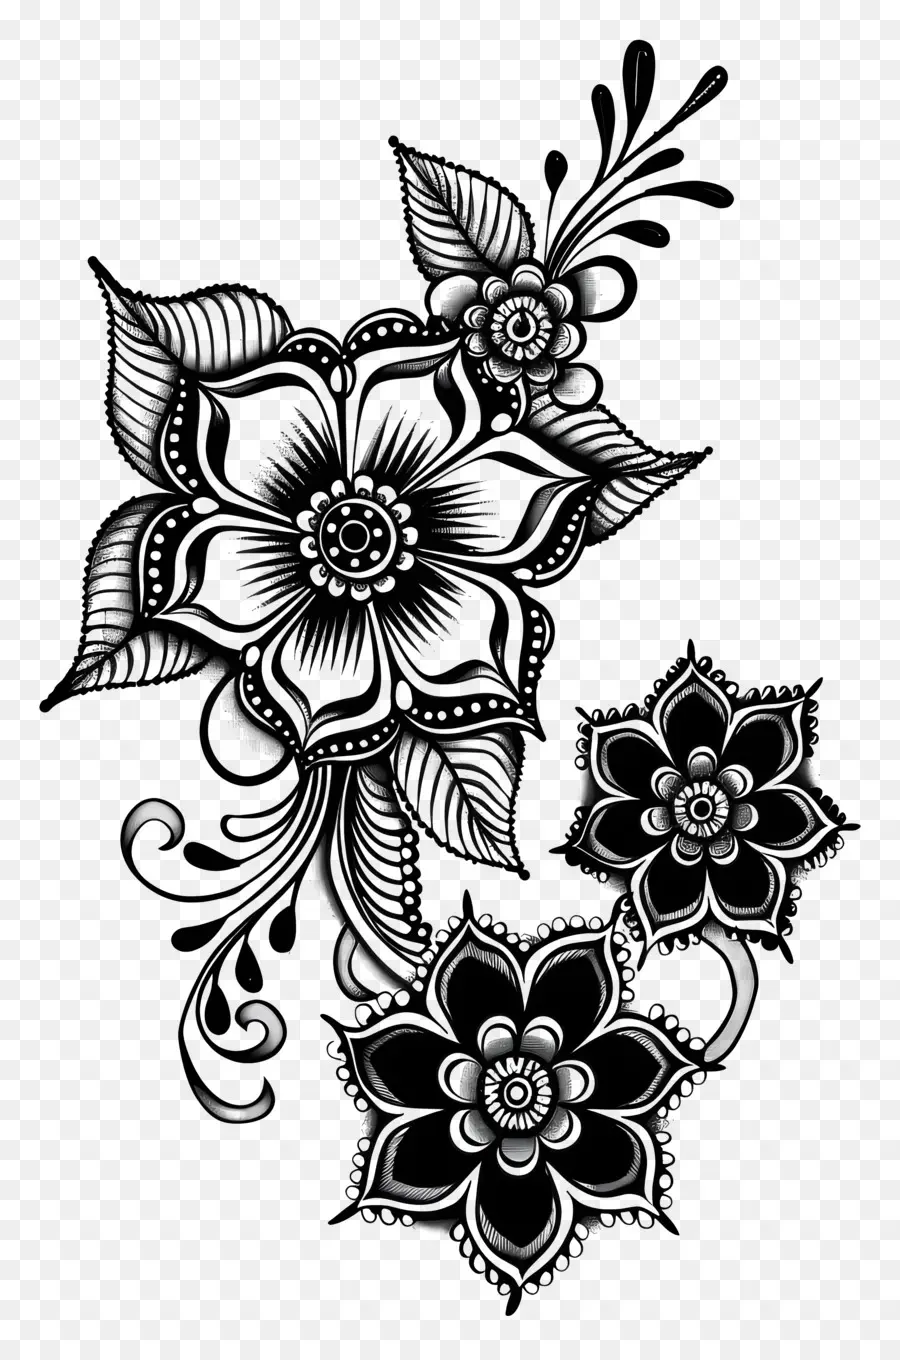 Blumenmuster - Kompliziertes Blumenmuster in Schwarz und Weiß